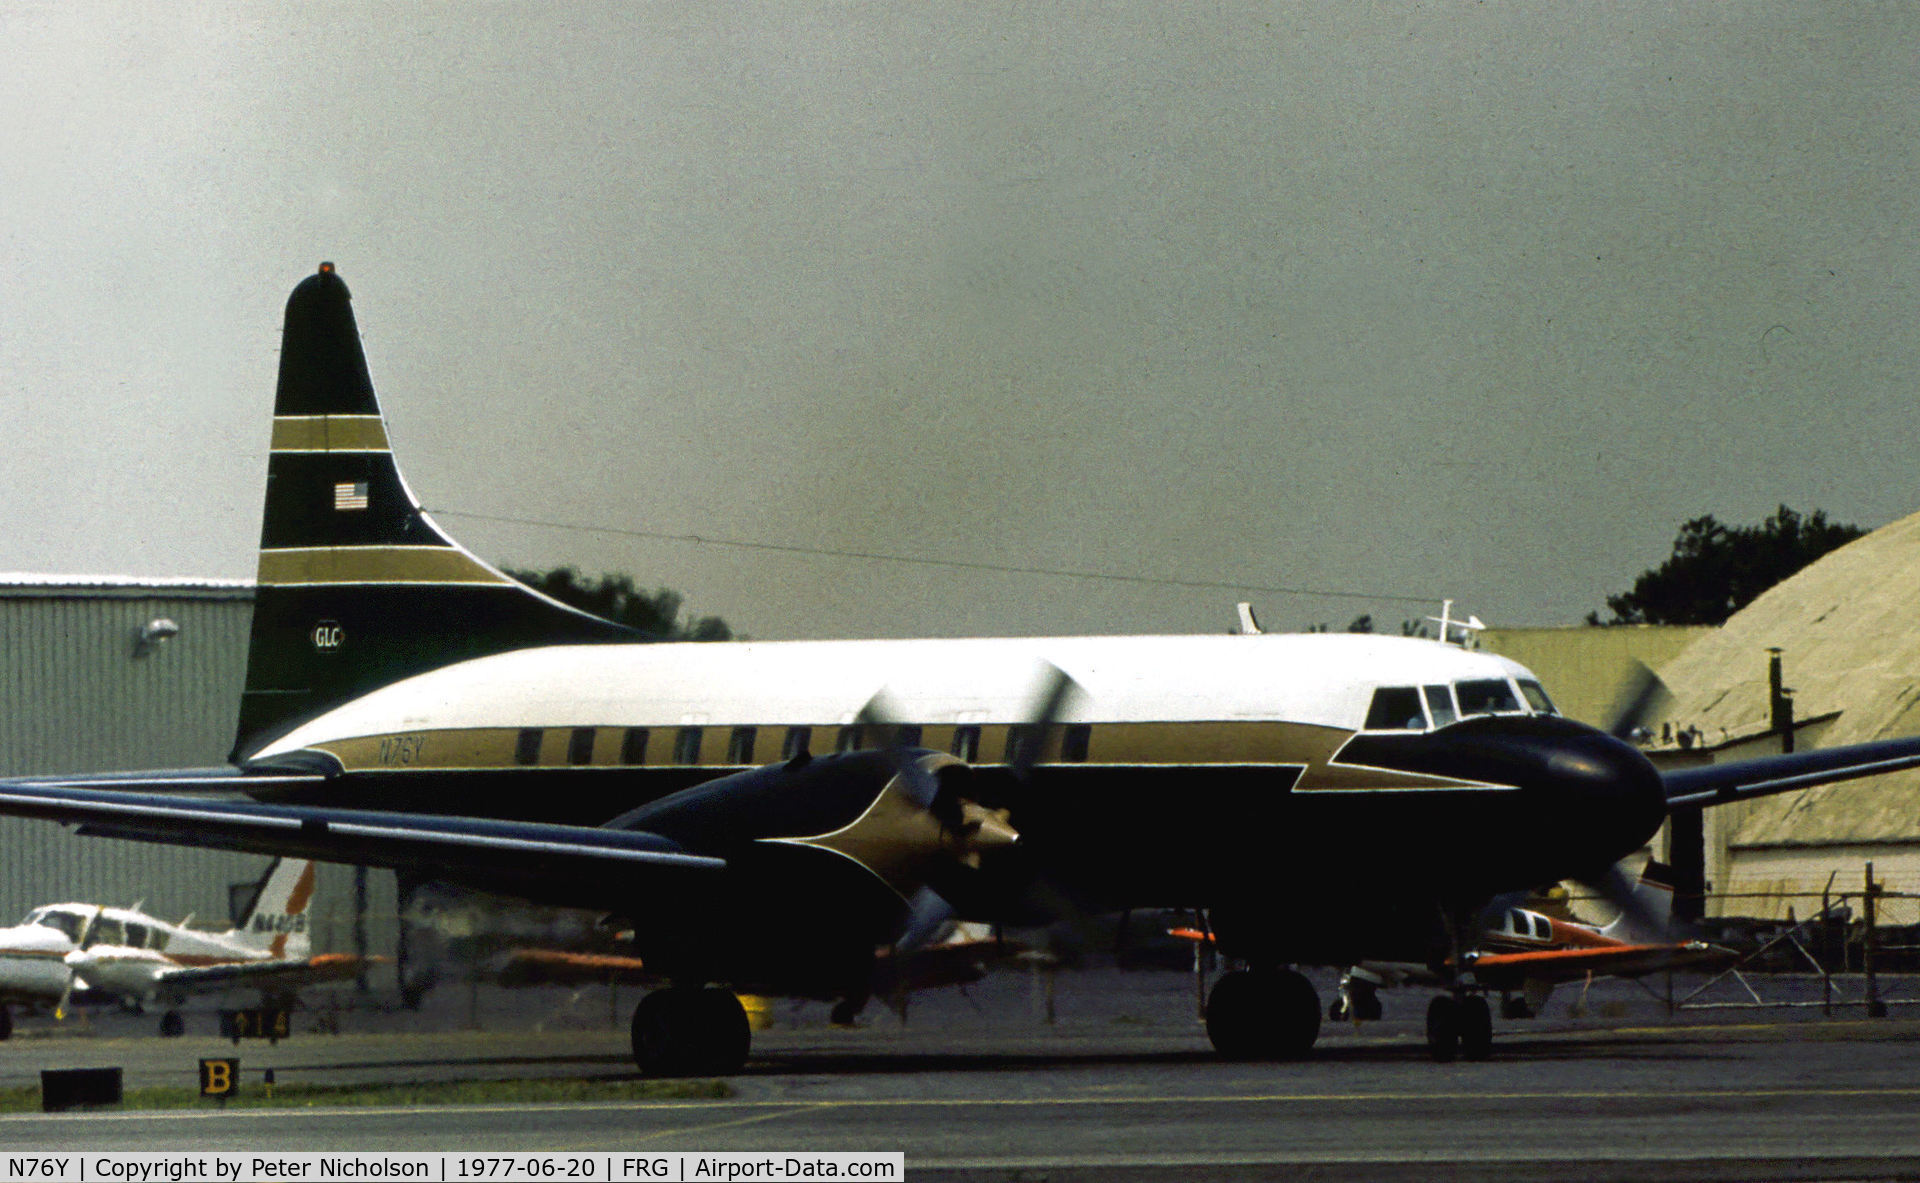 N76Y, 1954 Convair 580 C/N 214, Convair 580 at Republic Airport on Long Island in the Summer of 1977.